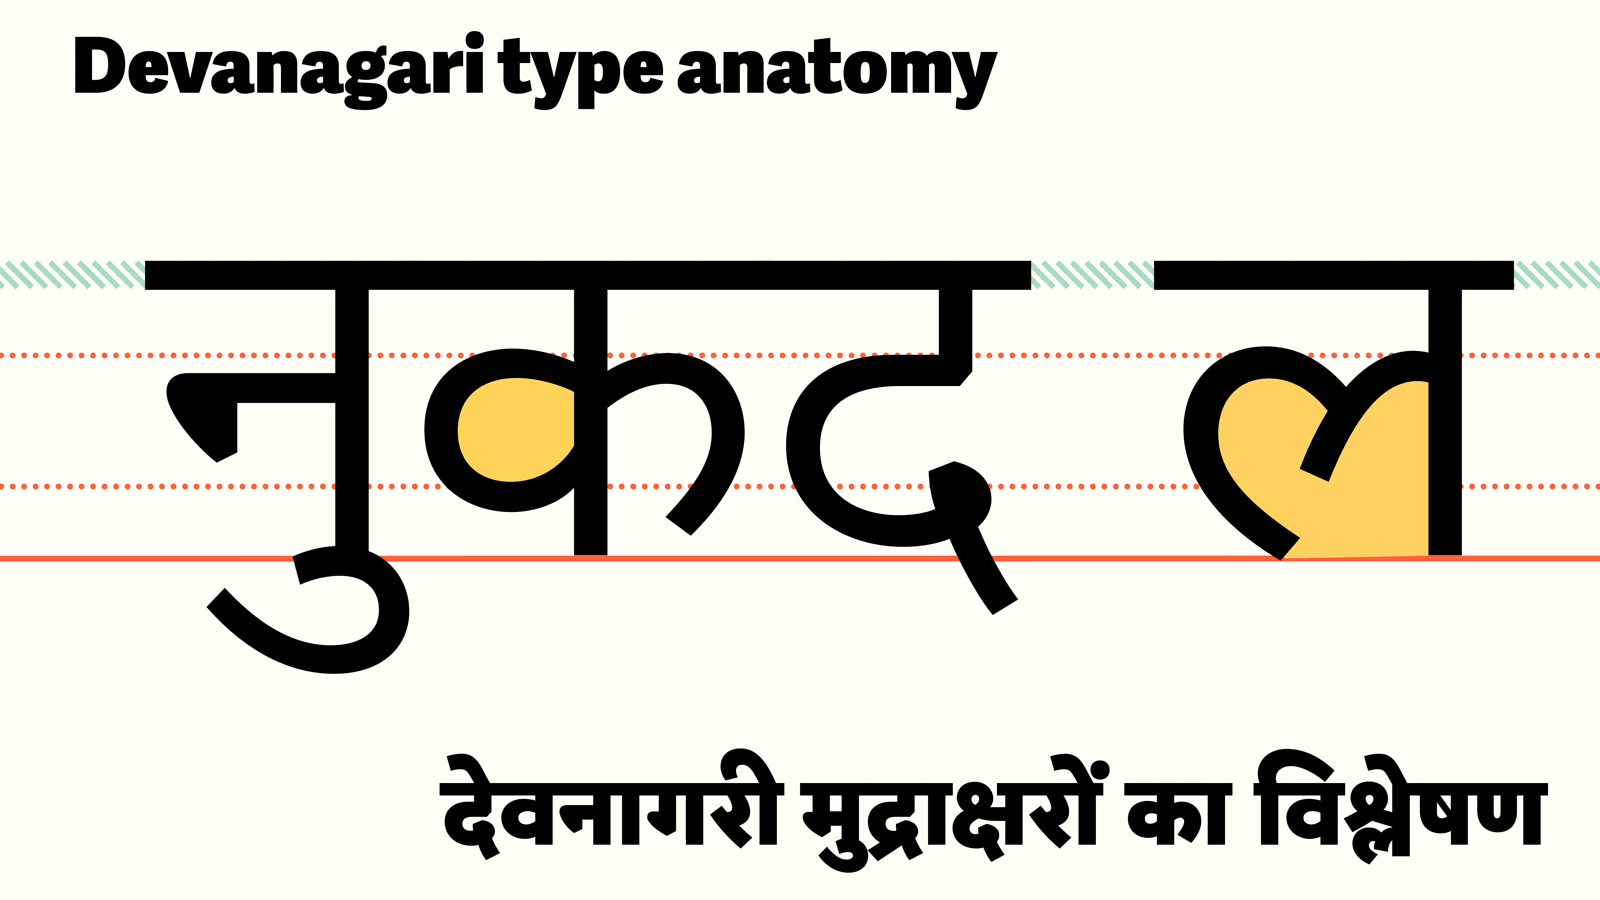 Anatomy of Devanagari type